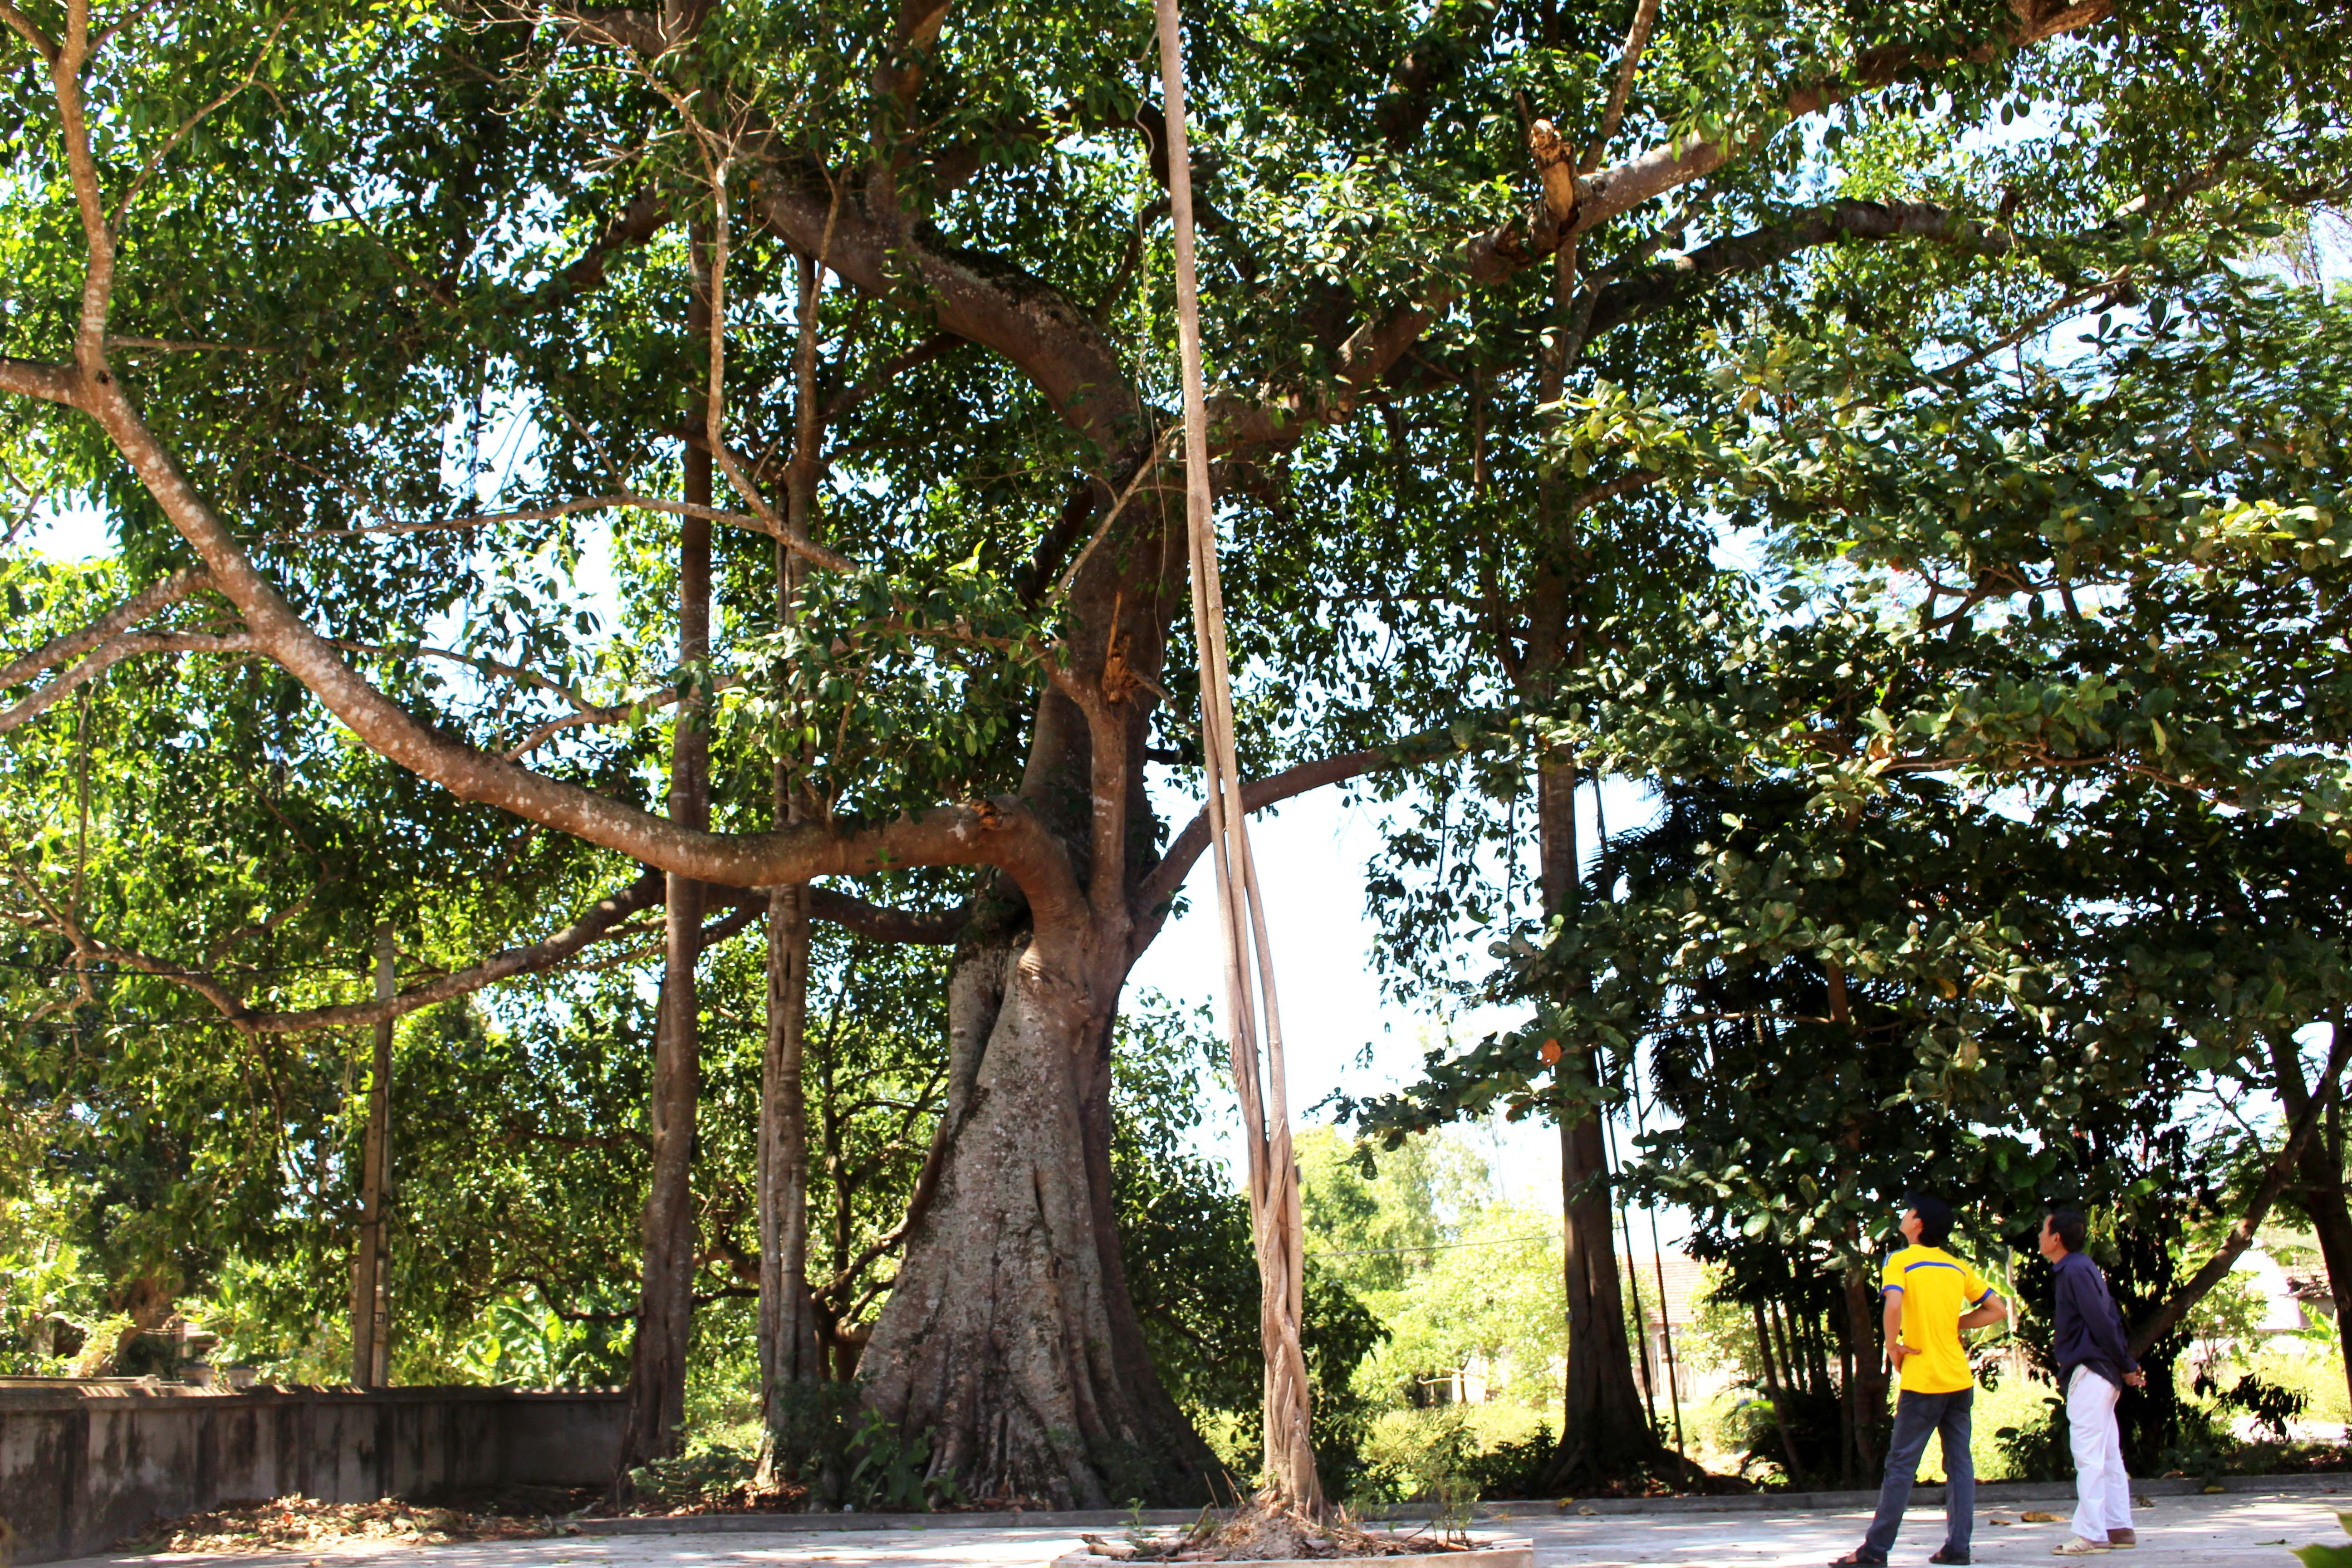 Về thăm Di tích Lịch sử đình Dương Liễu ở xóm 3, xã Nam Trung huyện Nam Đàn, mọi người sẽ được chiêm ngưỡng cây đa cổ thụ gần 300 tuổi. Gốc đa nơi to nhất có chu vi 10 m, cây cao tầm 20 m, vươn tỏa một vùng rộng lớn trước sân đình, ao đình và che mát cho cả đường làng. 